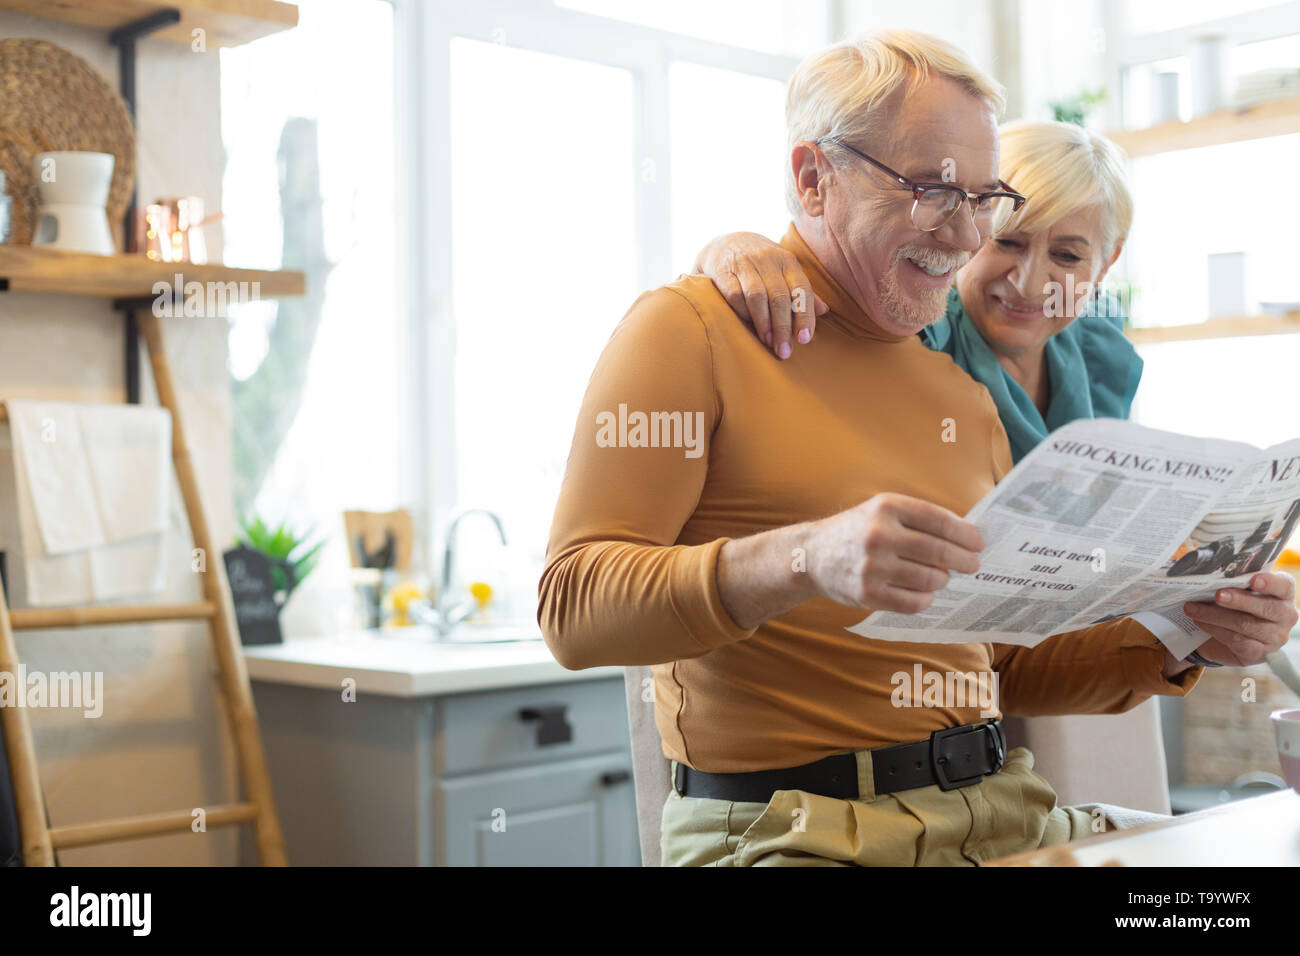 Lächelnde Menschen engagieren im Lesen, während seine Frau ihn umarmen Stockfoto